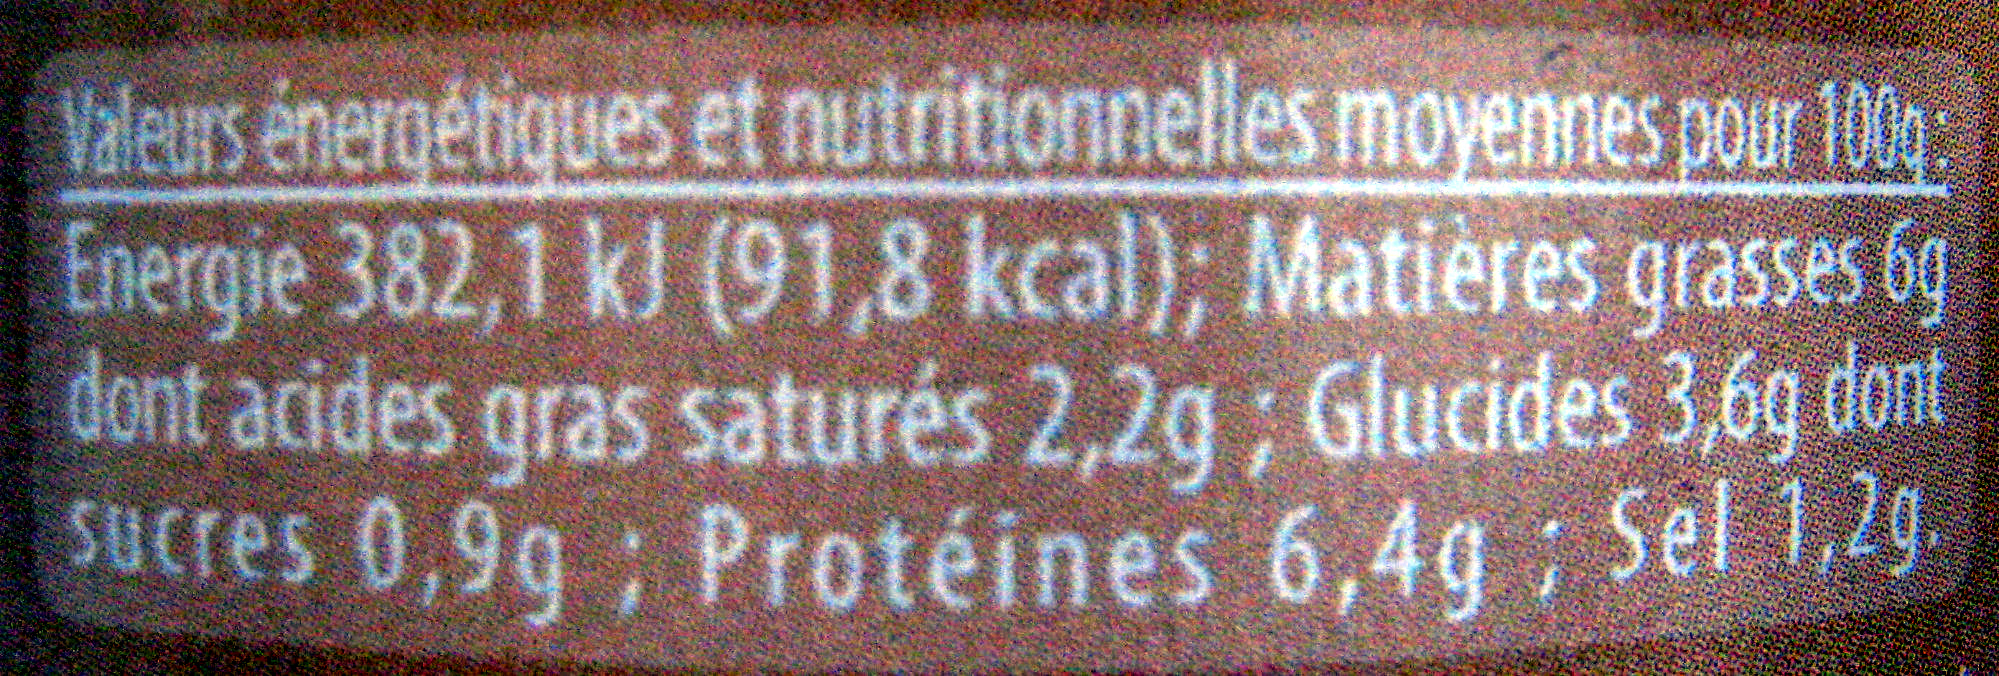 Blanquette de Canard à la Crème Fraîche - Nutrition facts - fr